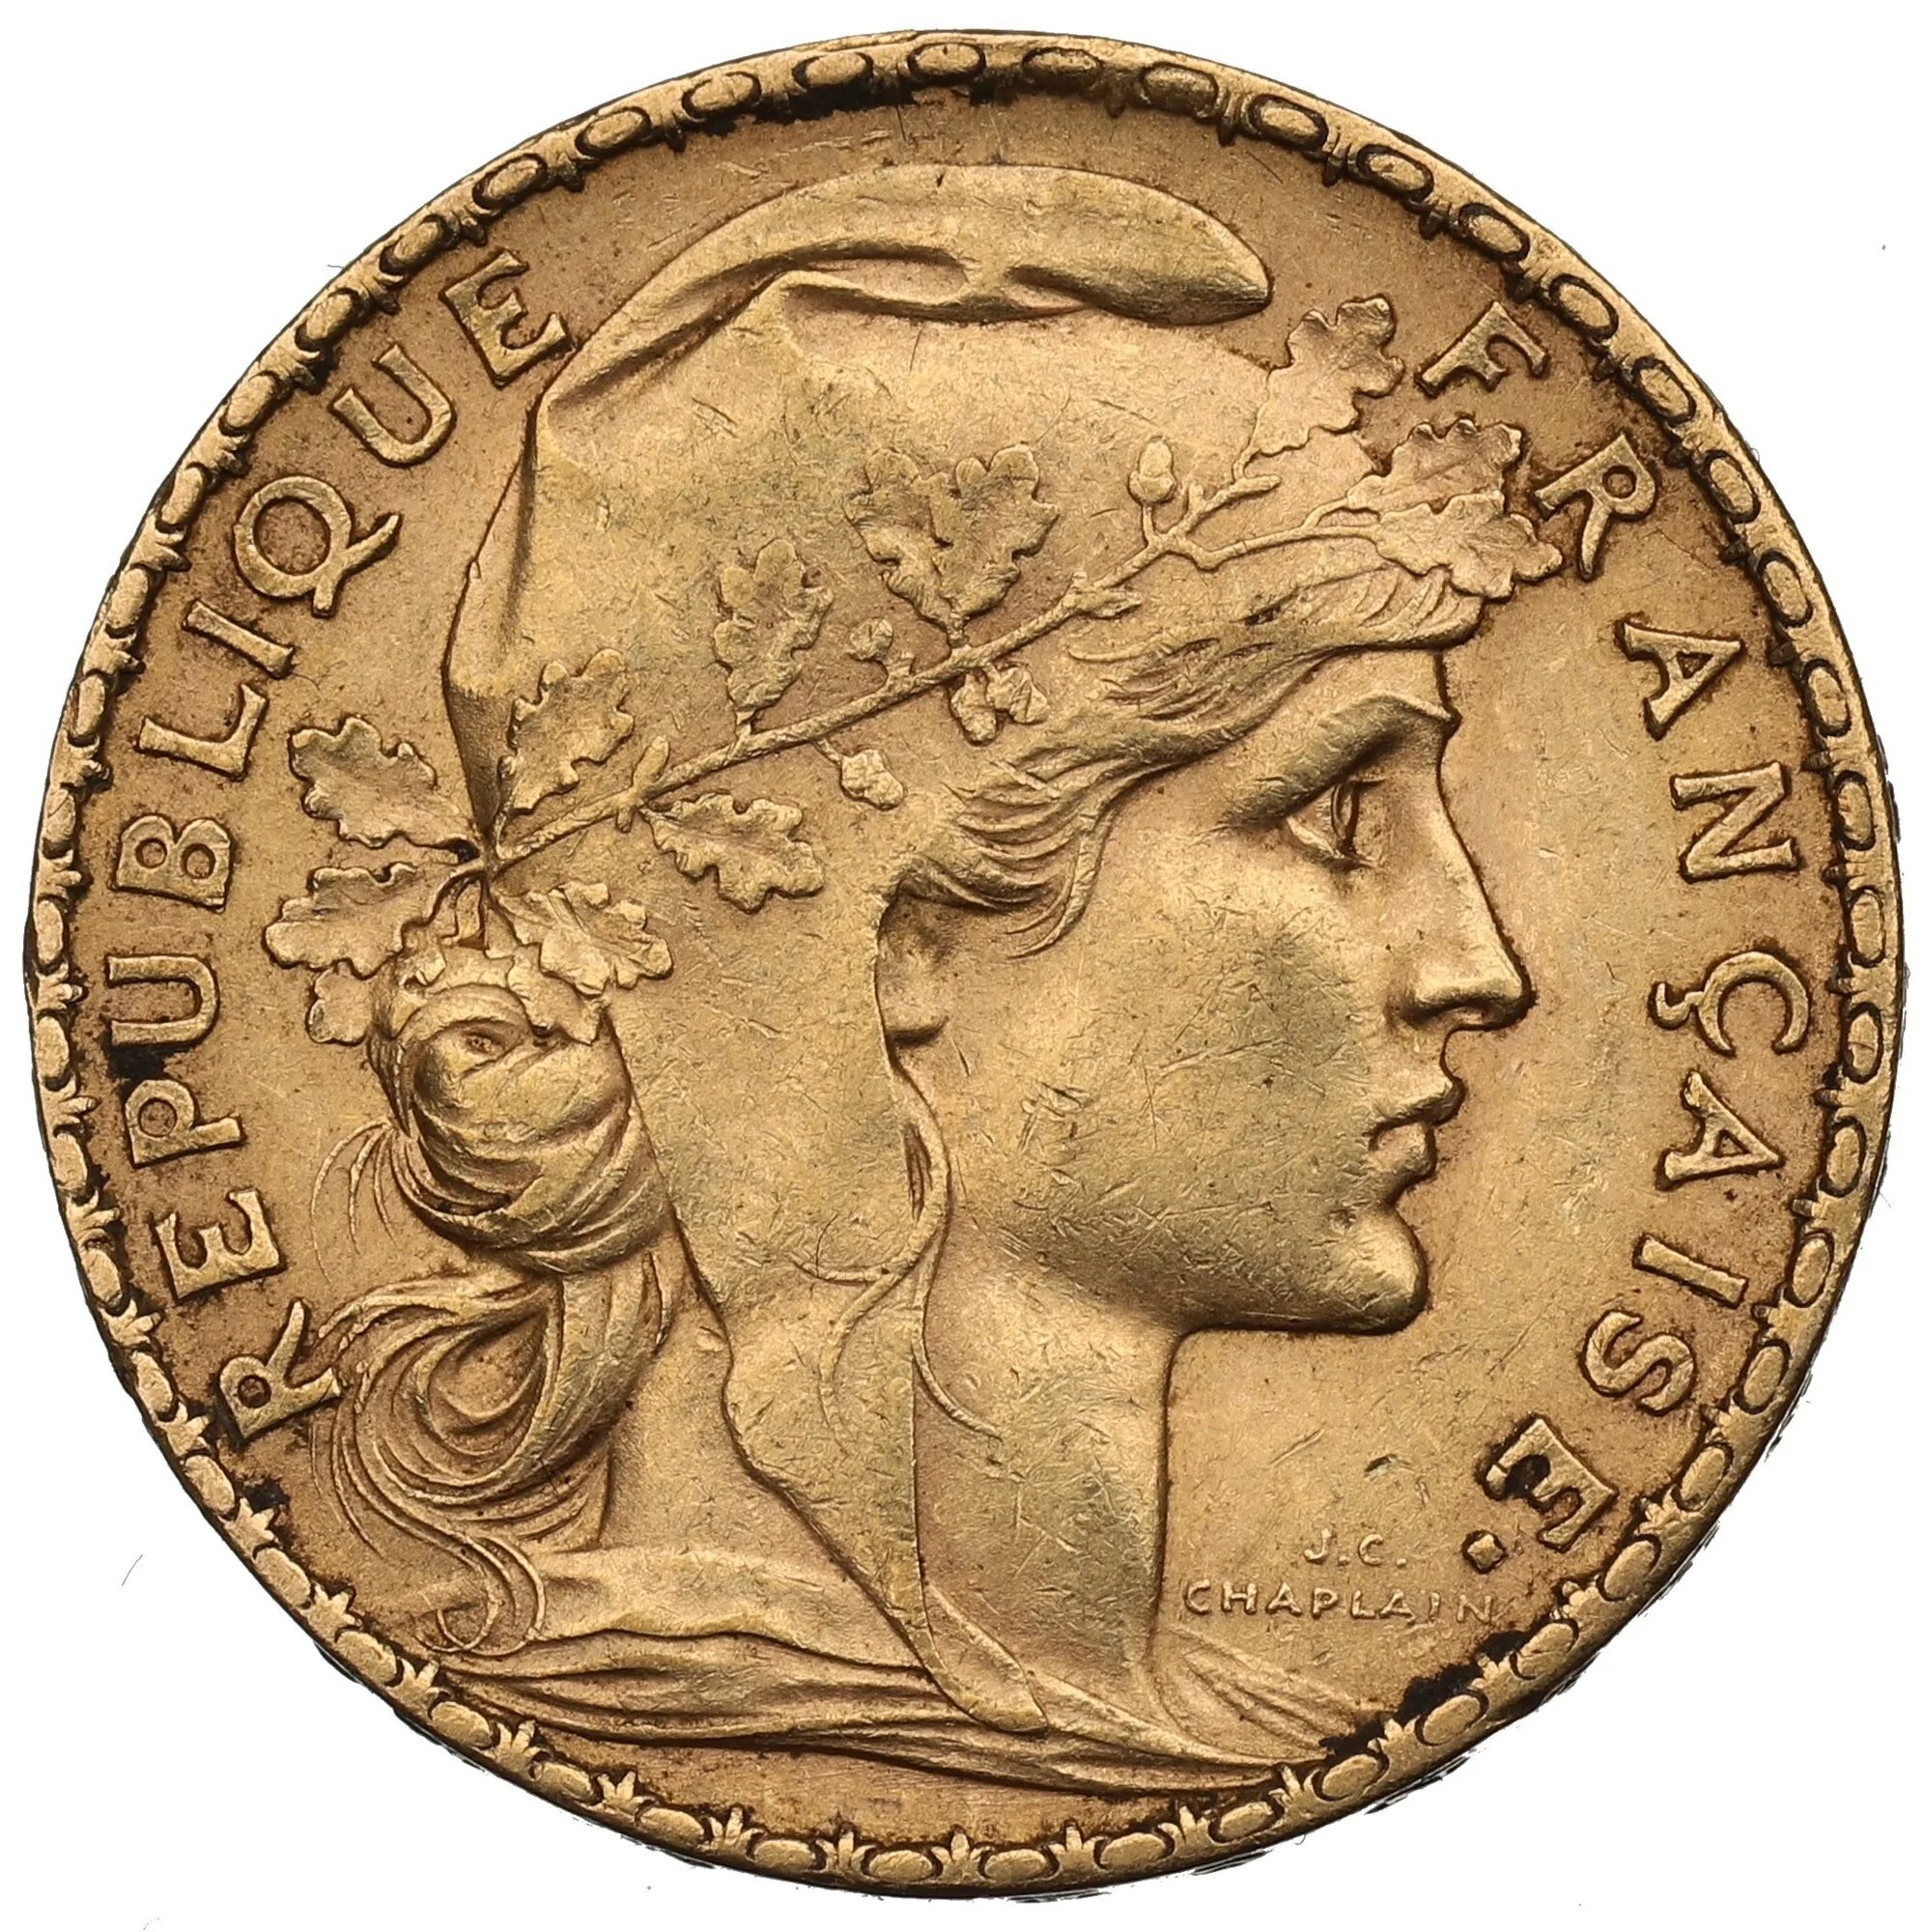 20 Франков золото Франция. Золотая монета 20 франков Франция. 20 Франков 1907 Франция. (Золотая монета Франции)1894.